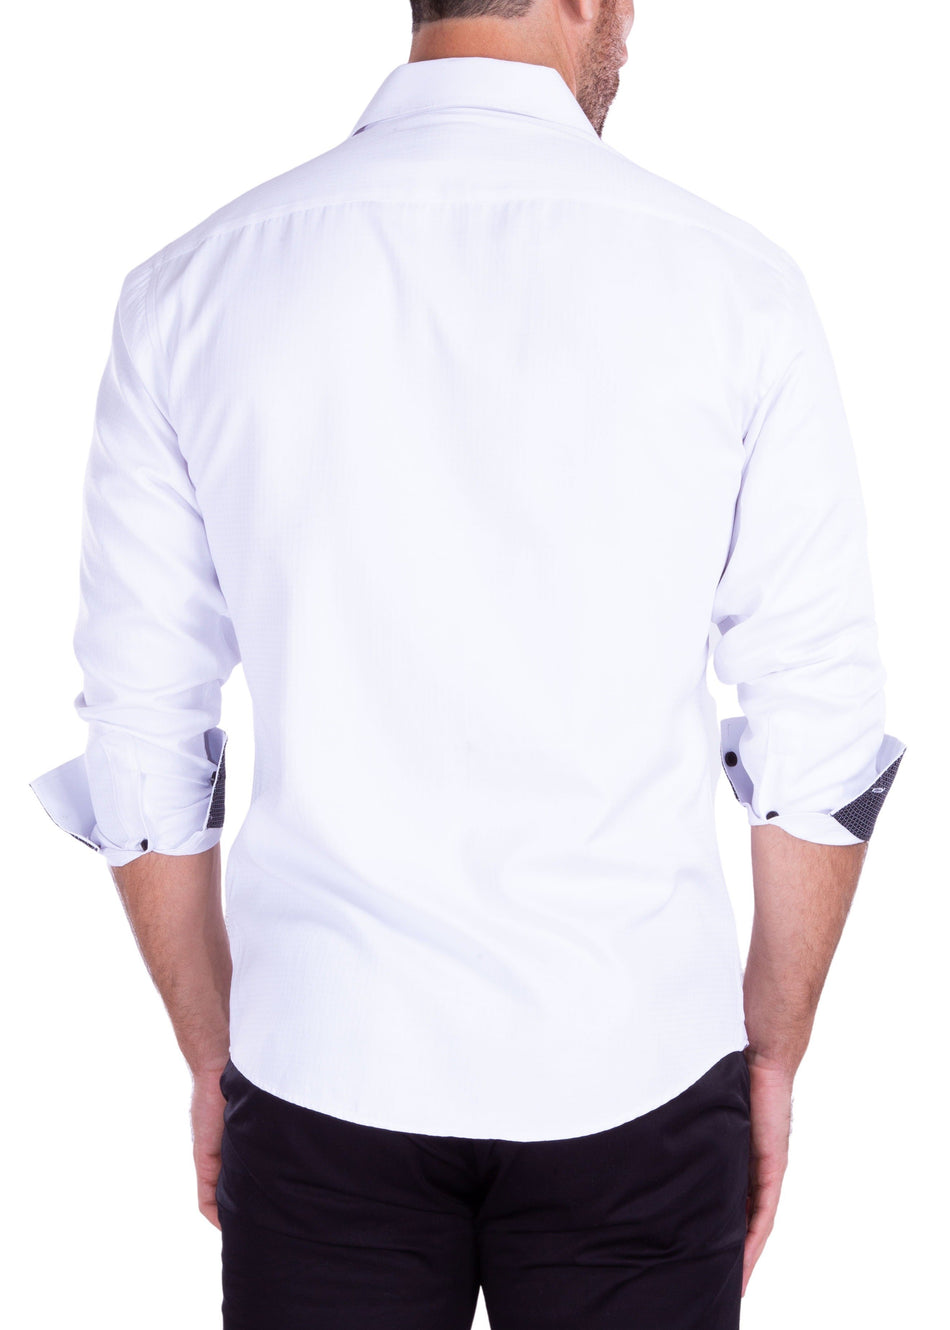 212254 - Men's White Button Up Long Sleeve Dress Shirt